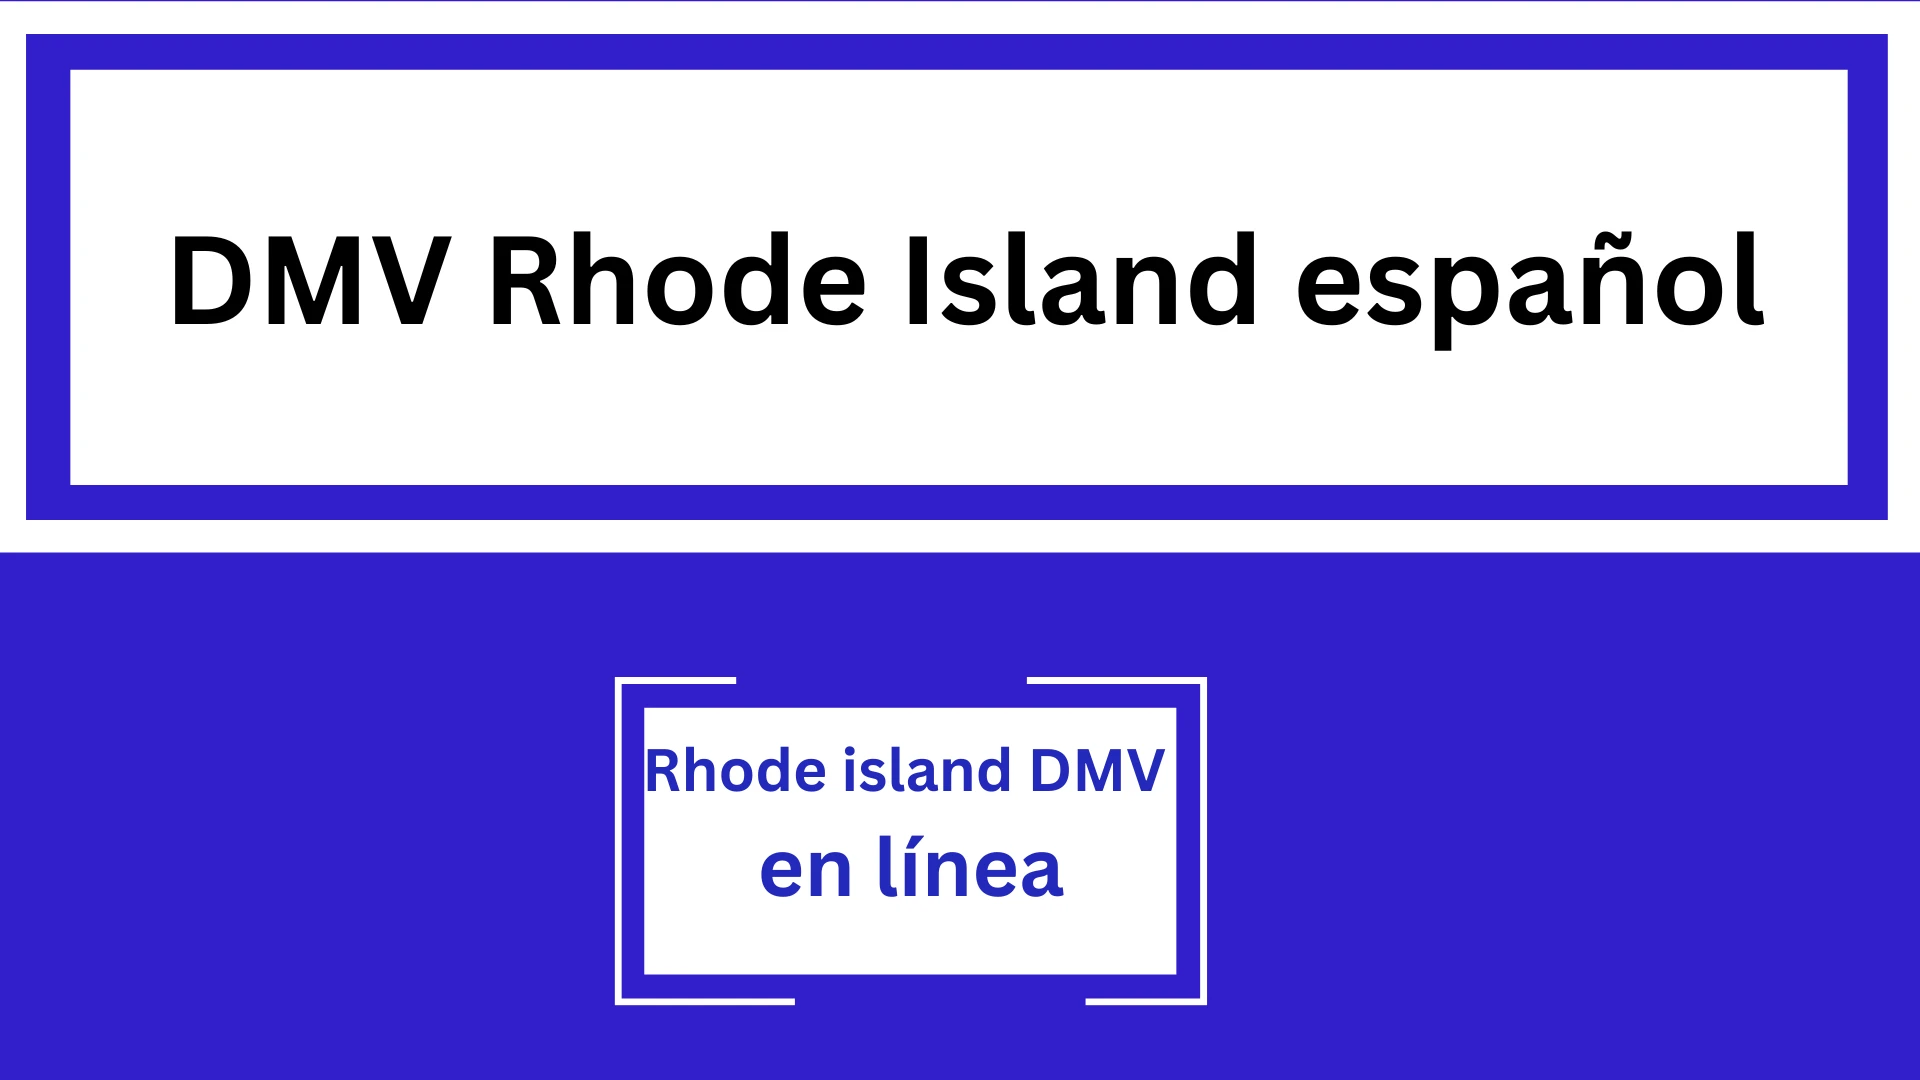 DMV Rhode Island